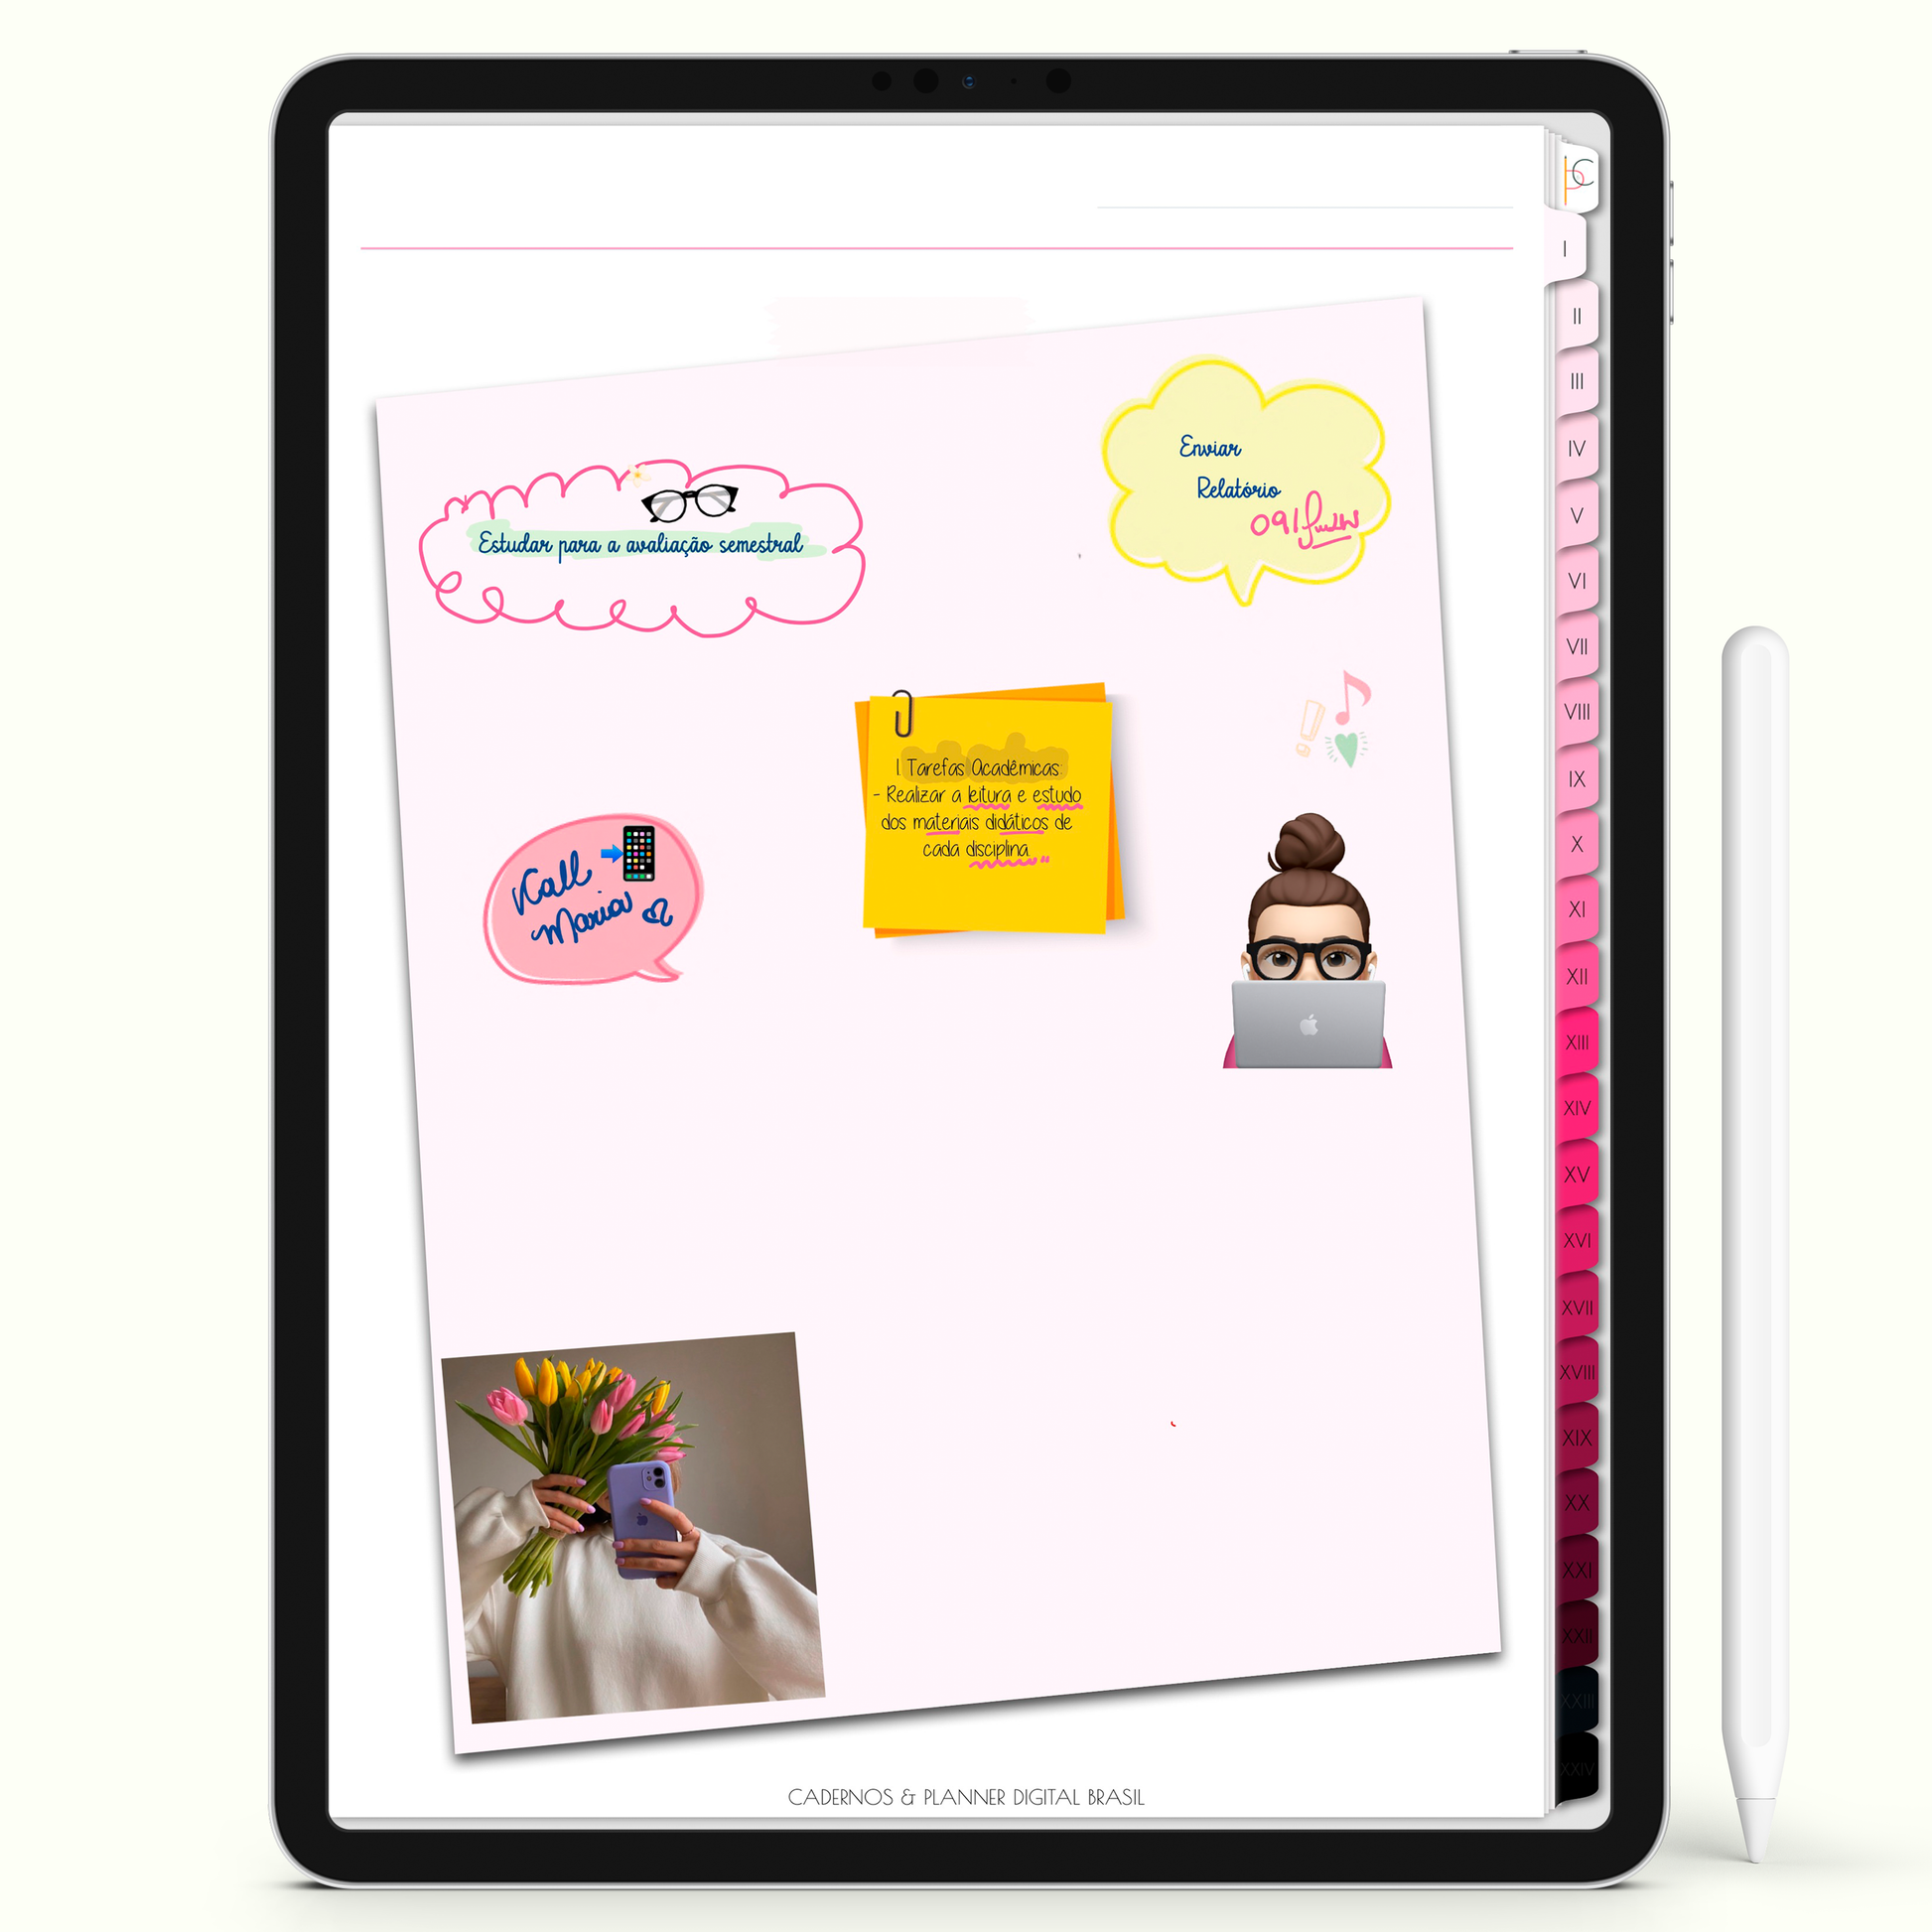 Caderno Digital Blush 24 Matérias - Quadro de avisos do Caderno para iPad e Tablet Android. Cadernos & Planner Digital Brasil